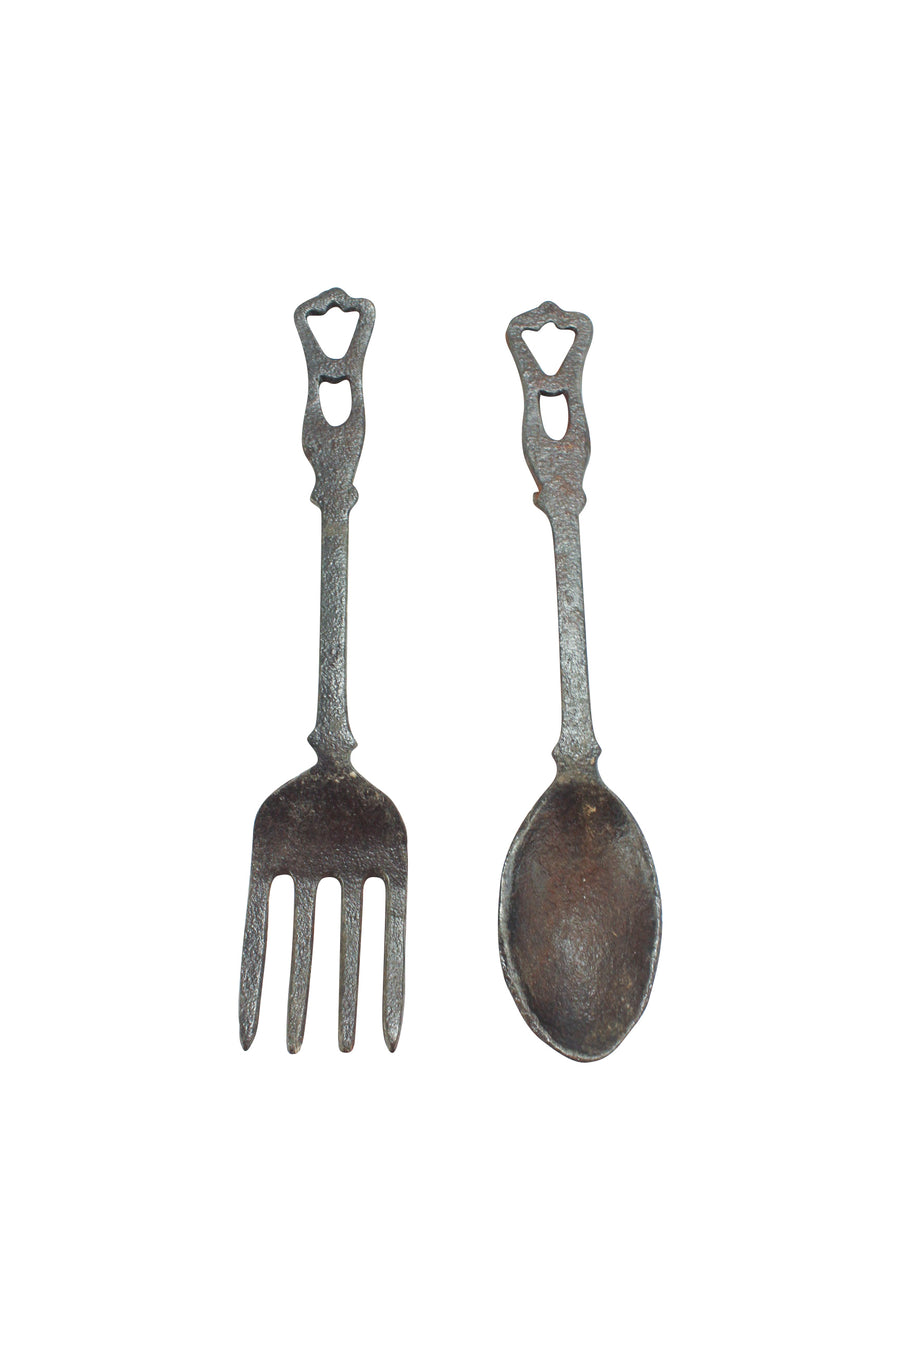 Iron Fork + Spoon Set